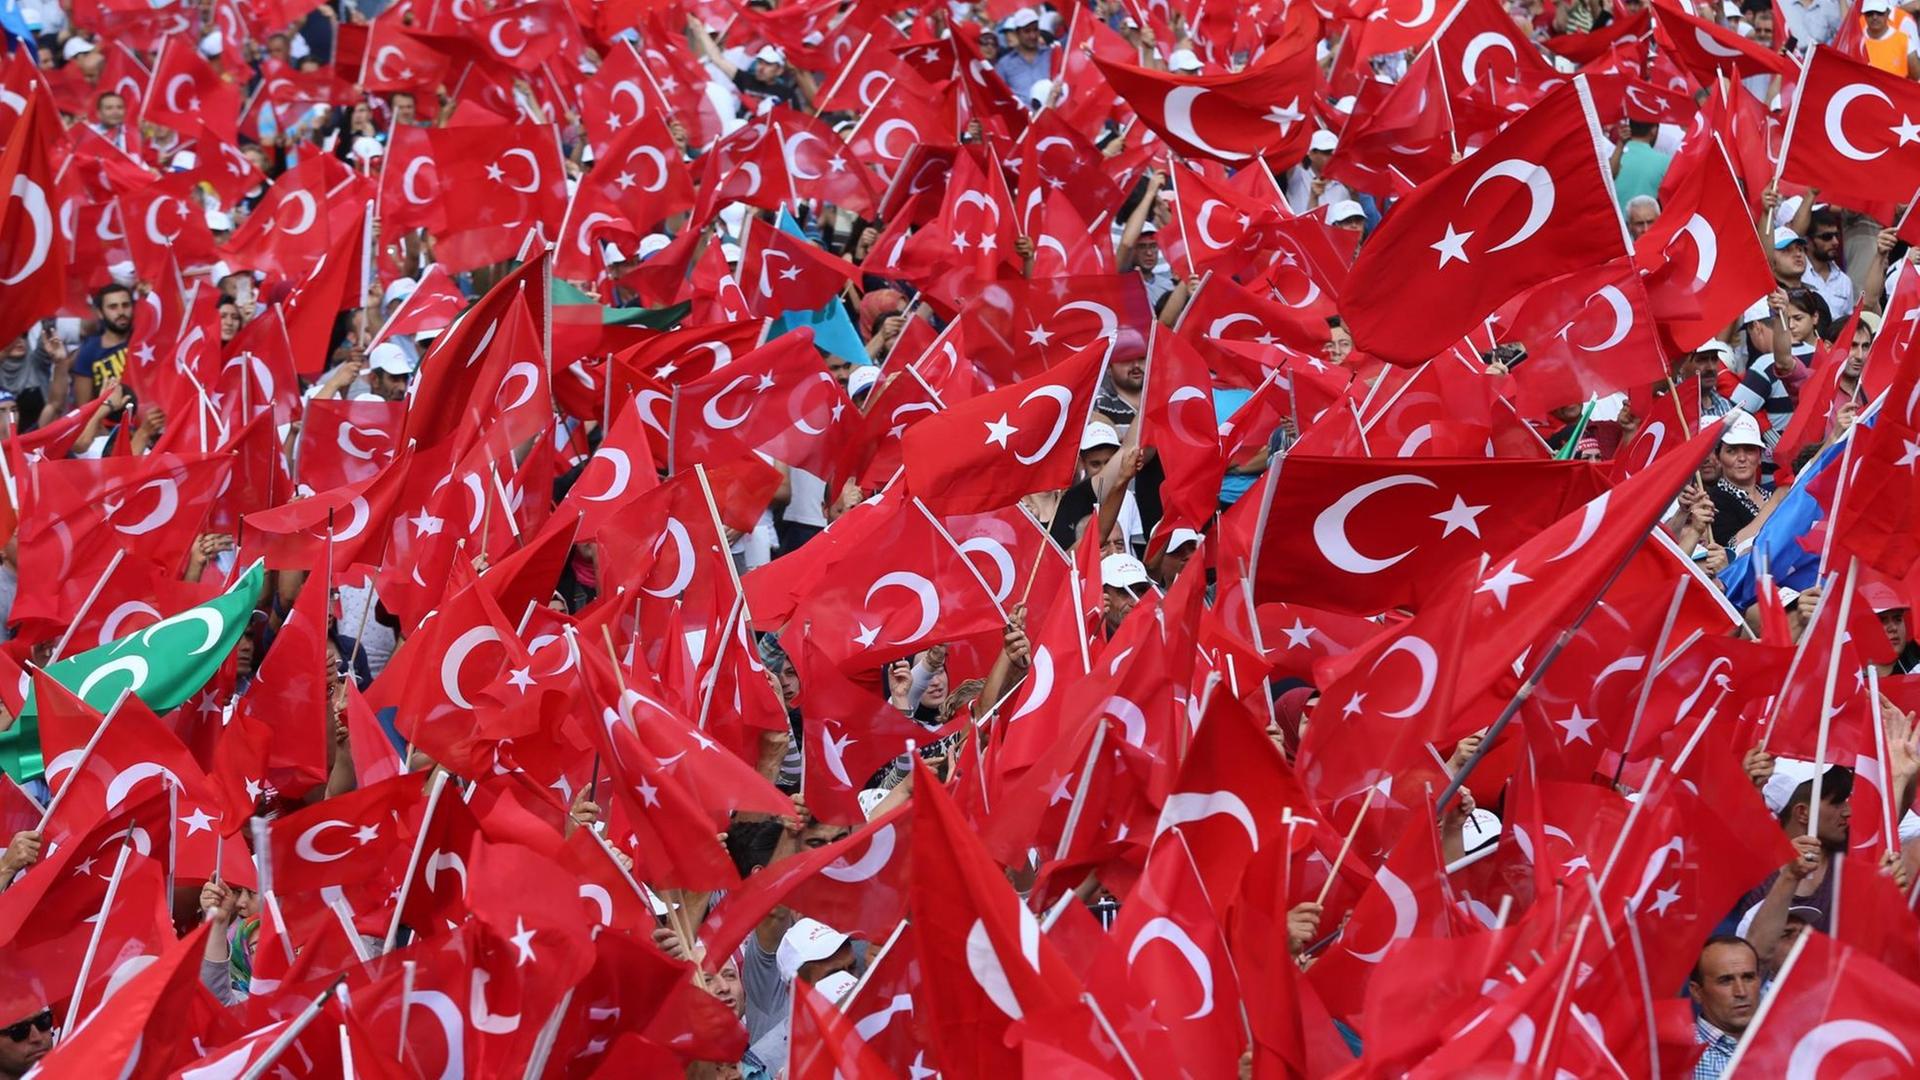 Sie sehen hunderte türkische Fahnen auf einer Großkundgebung.